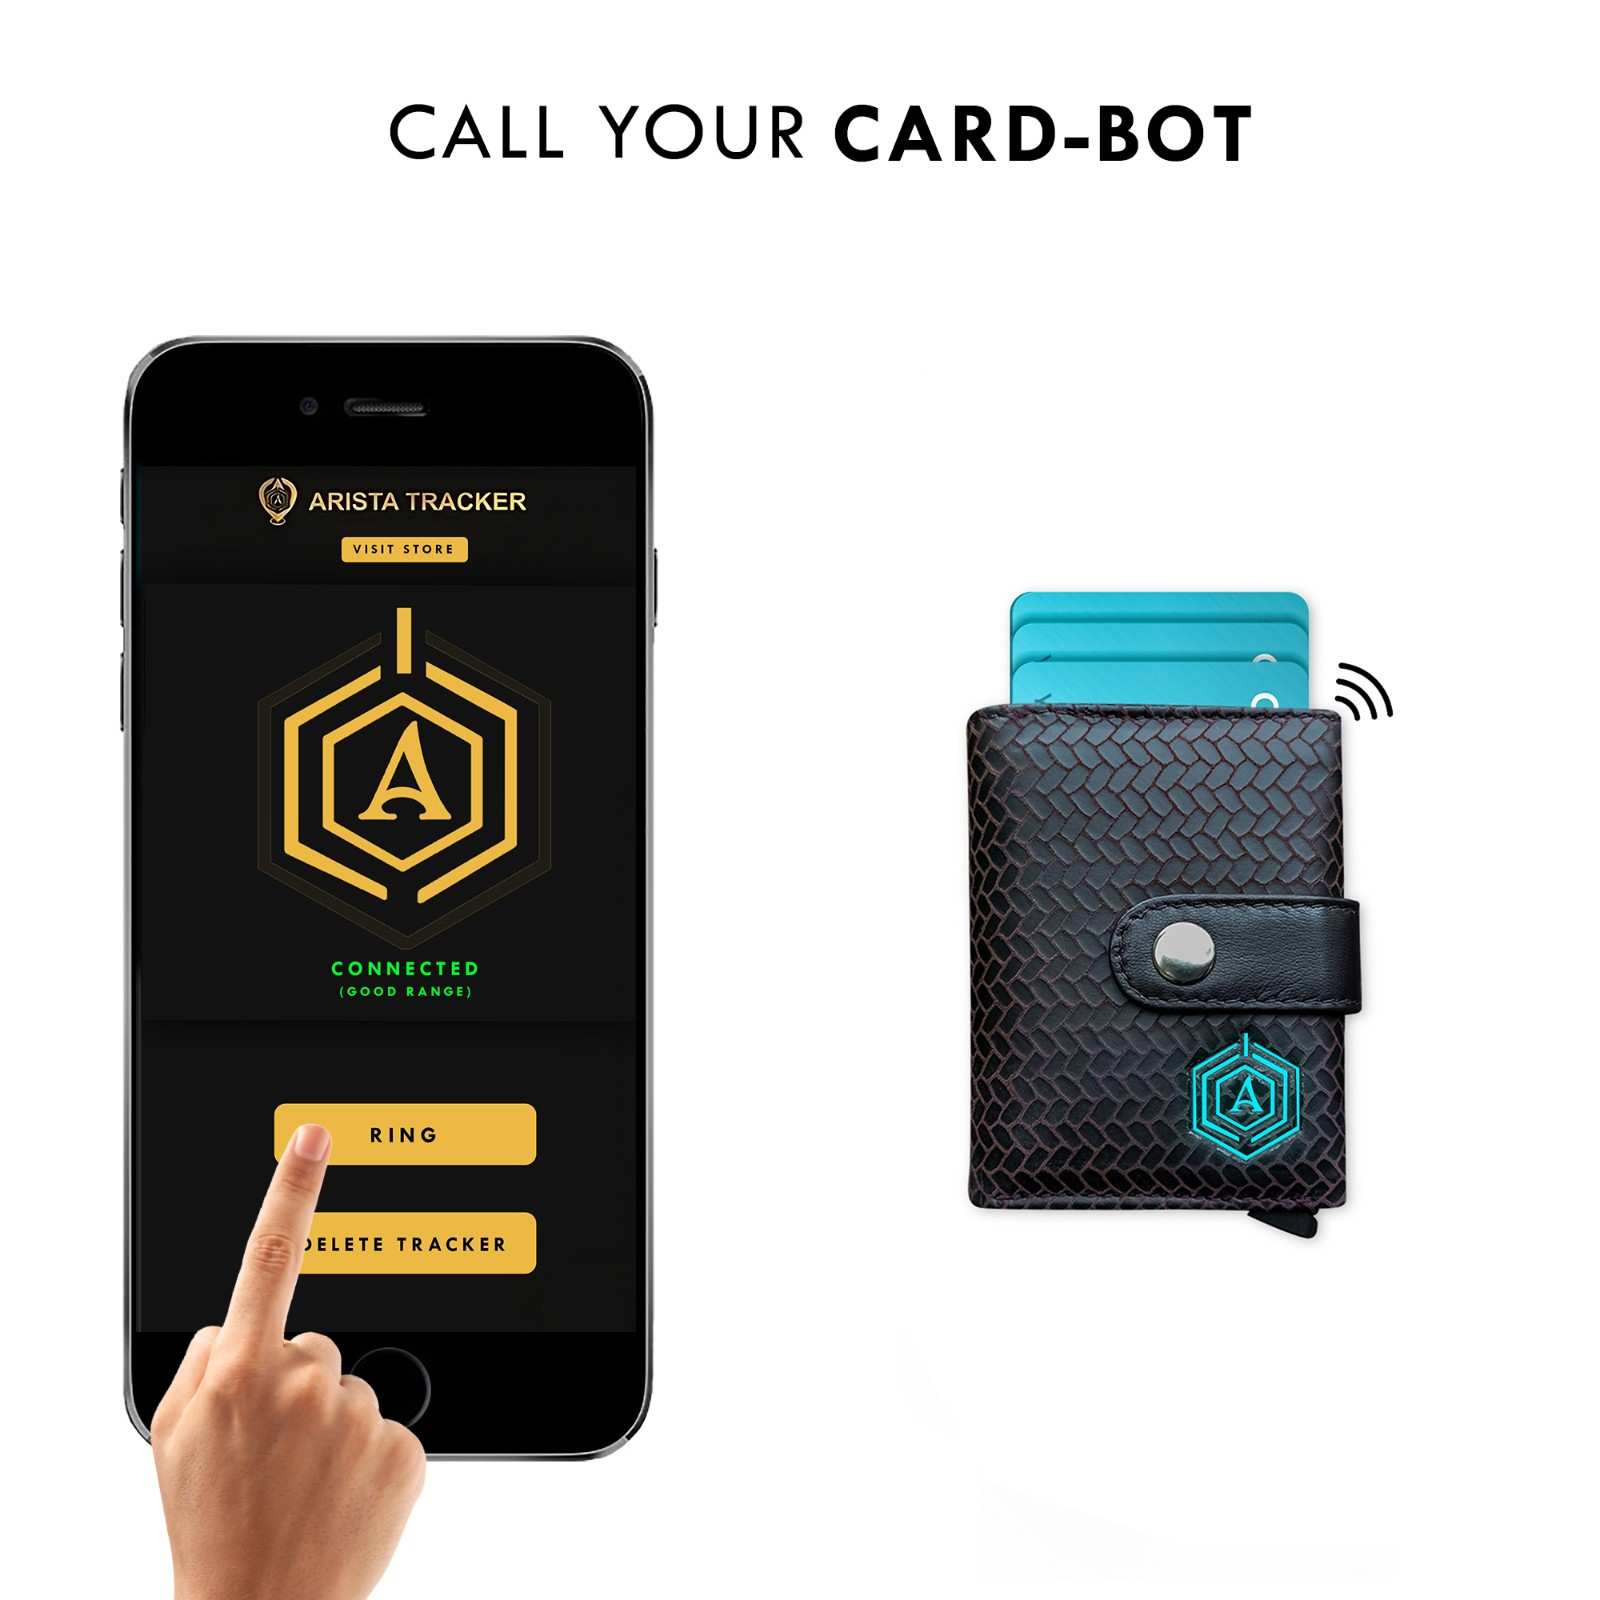 Smart Card-Bot